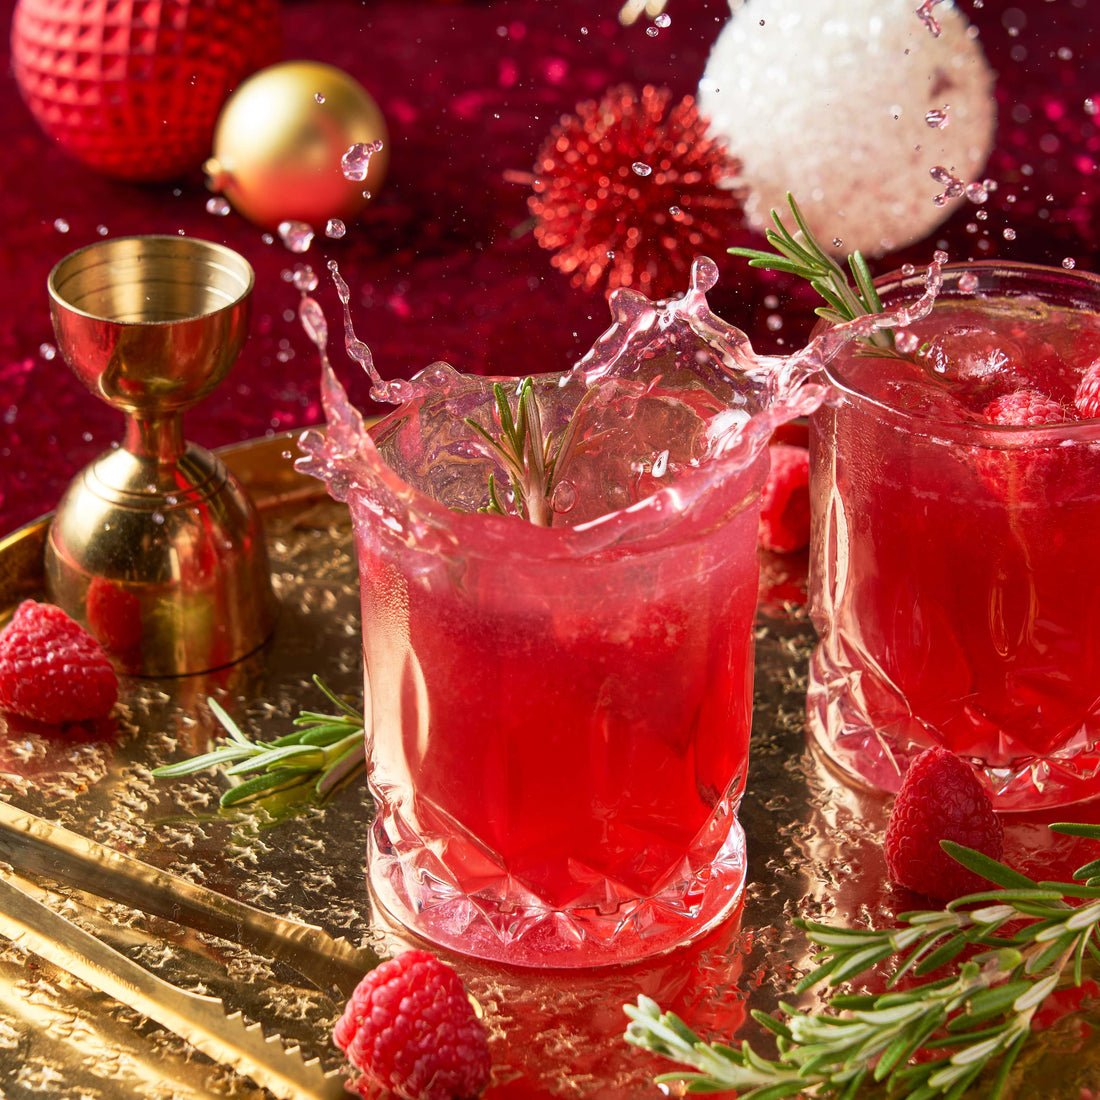 Raspberry Gin & Tonic